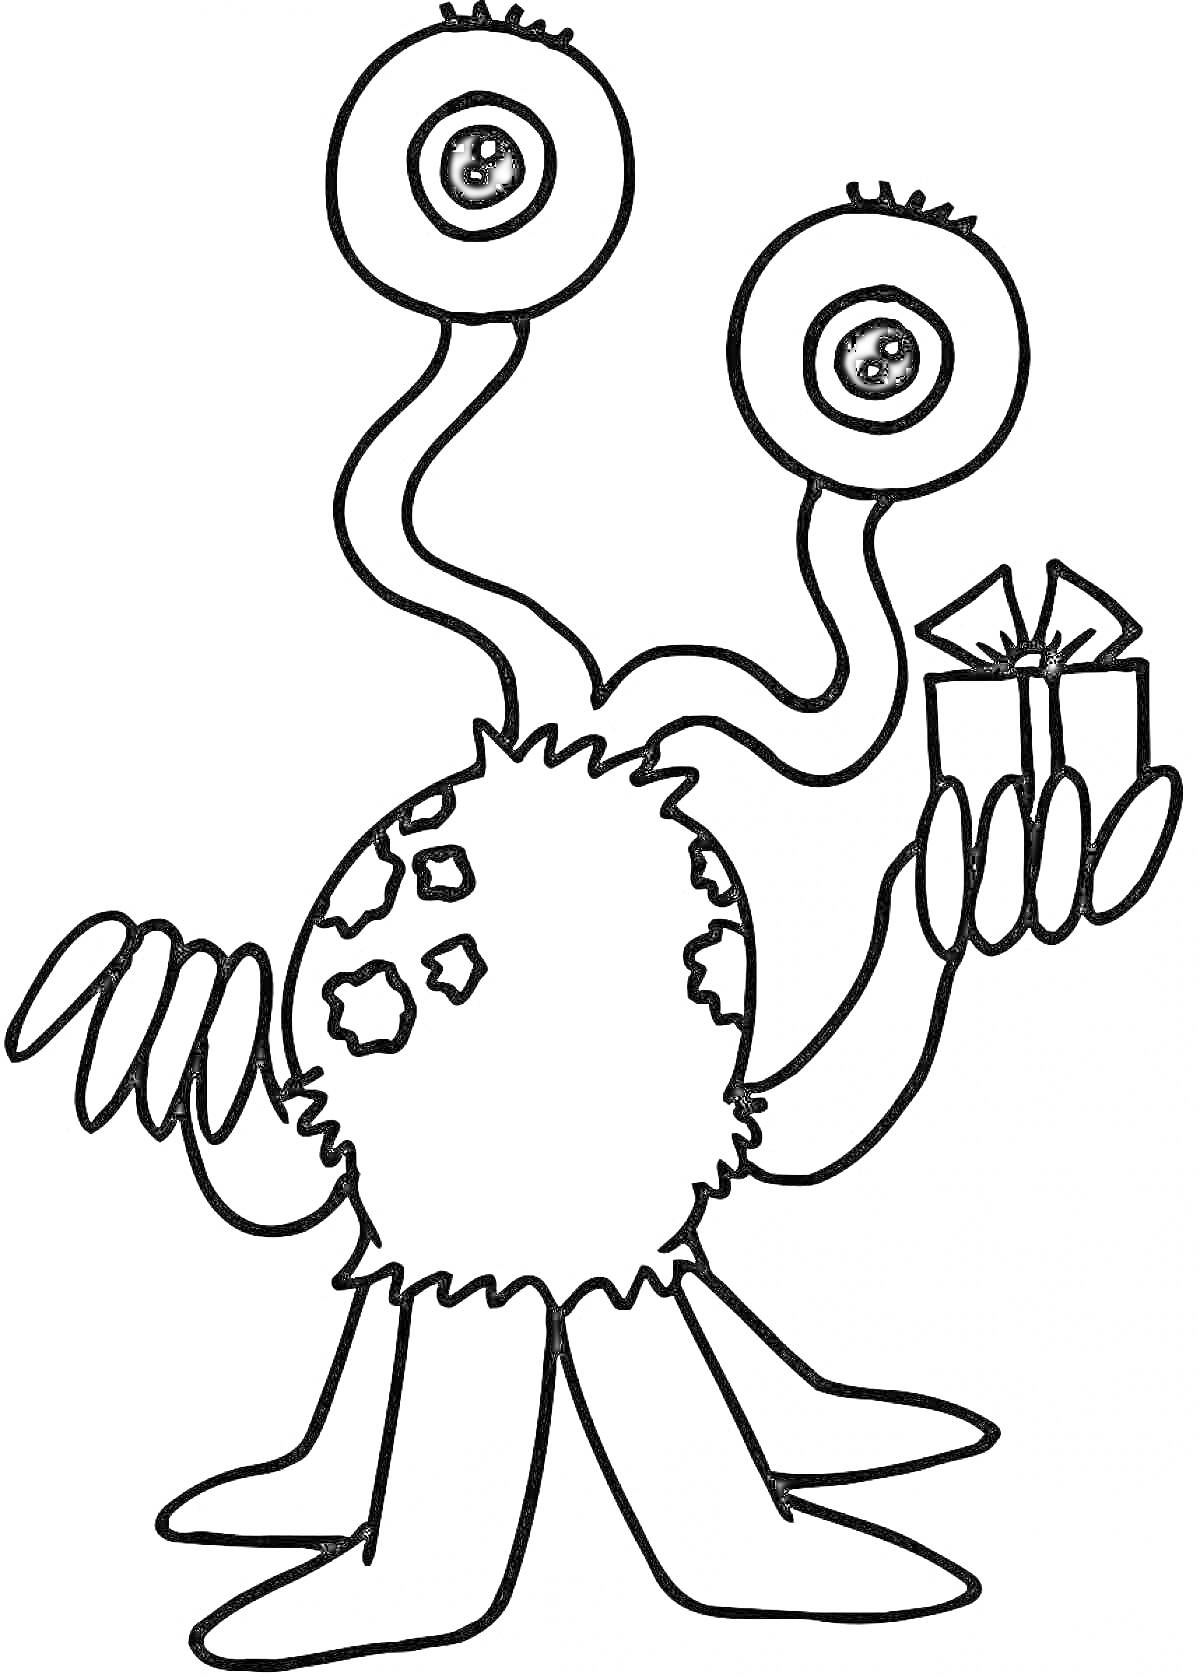 Инопланетянин с тремя ногами и четырьмя руками, держащий подарок